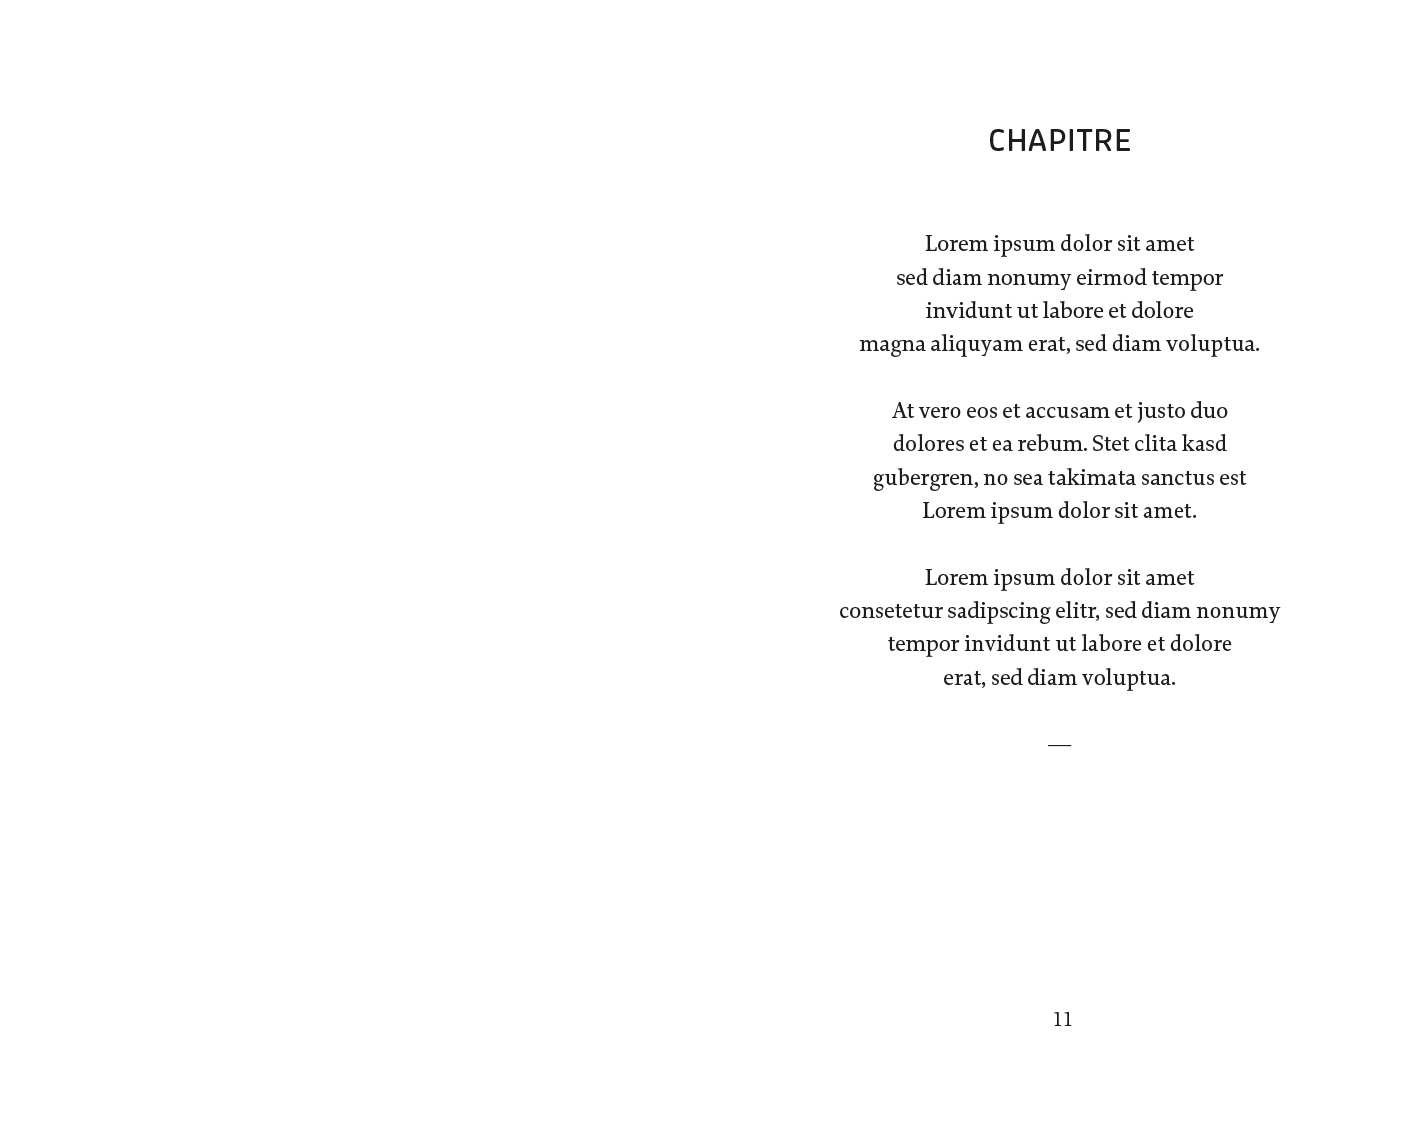 Exemple d'une mise en page de poésie classique version personnalisée